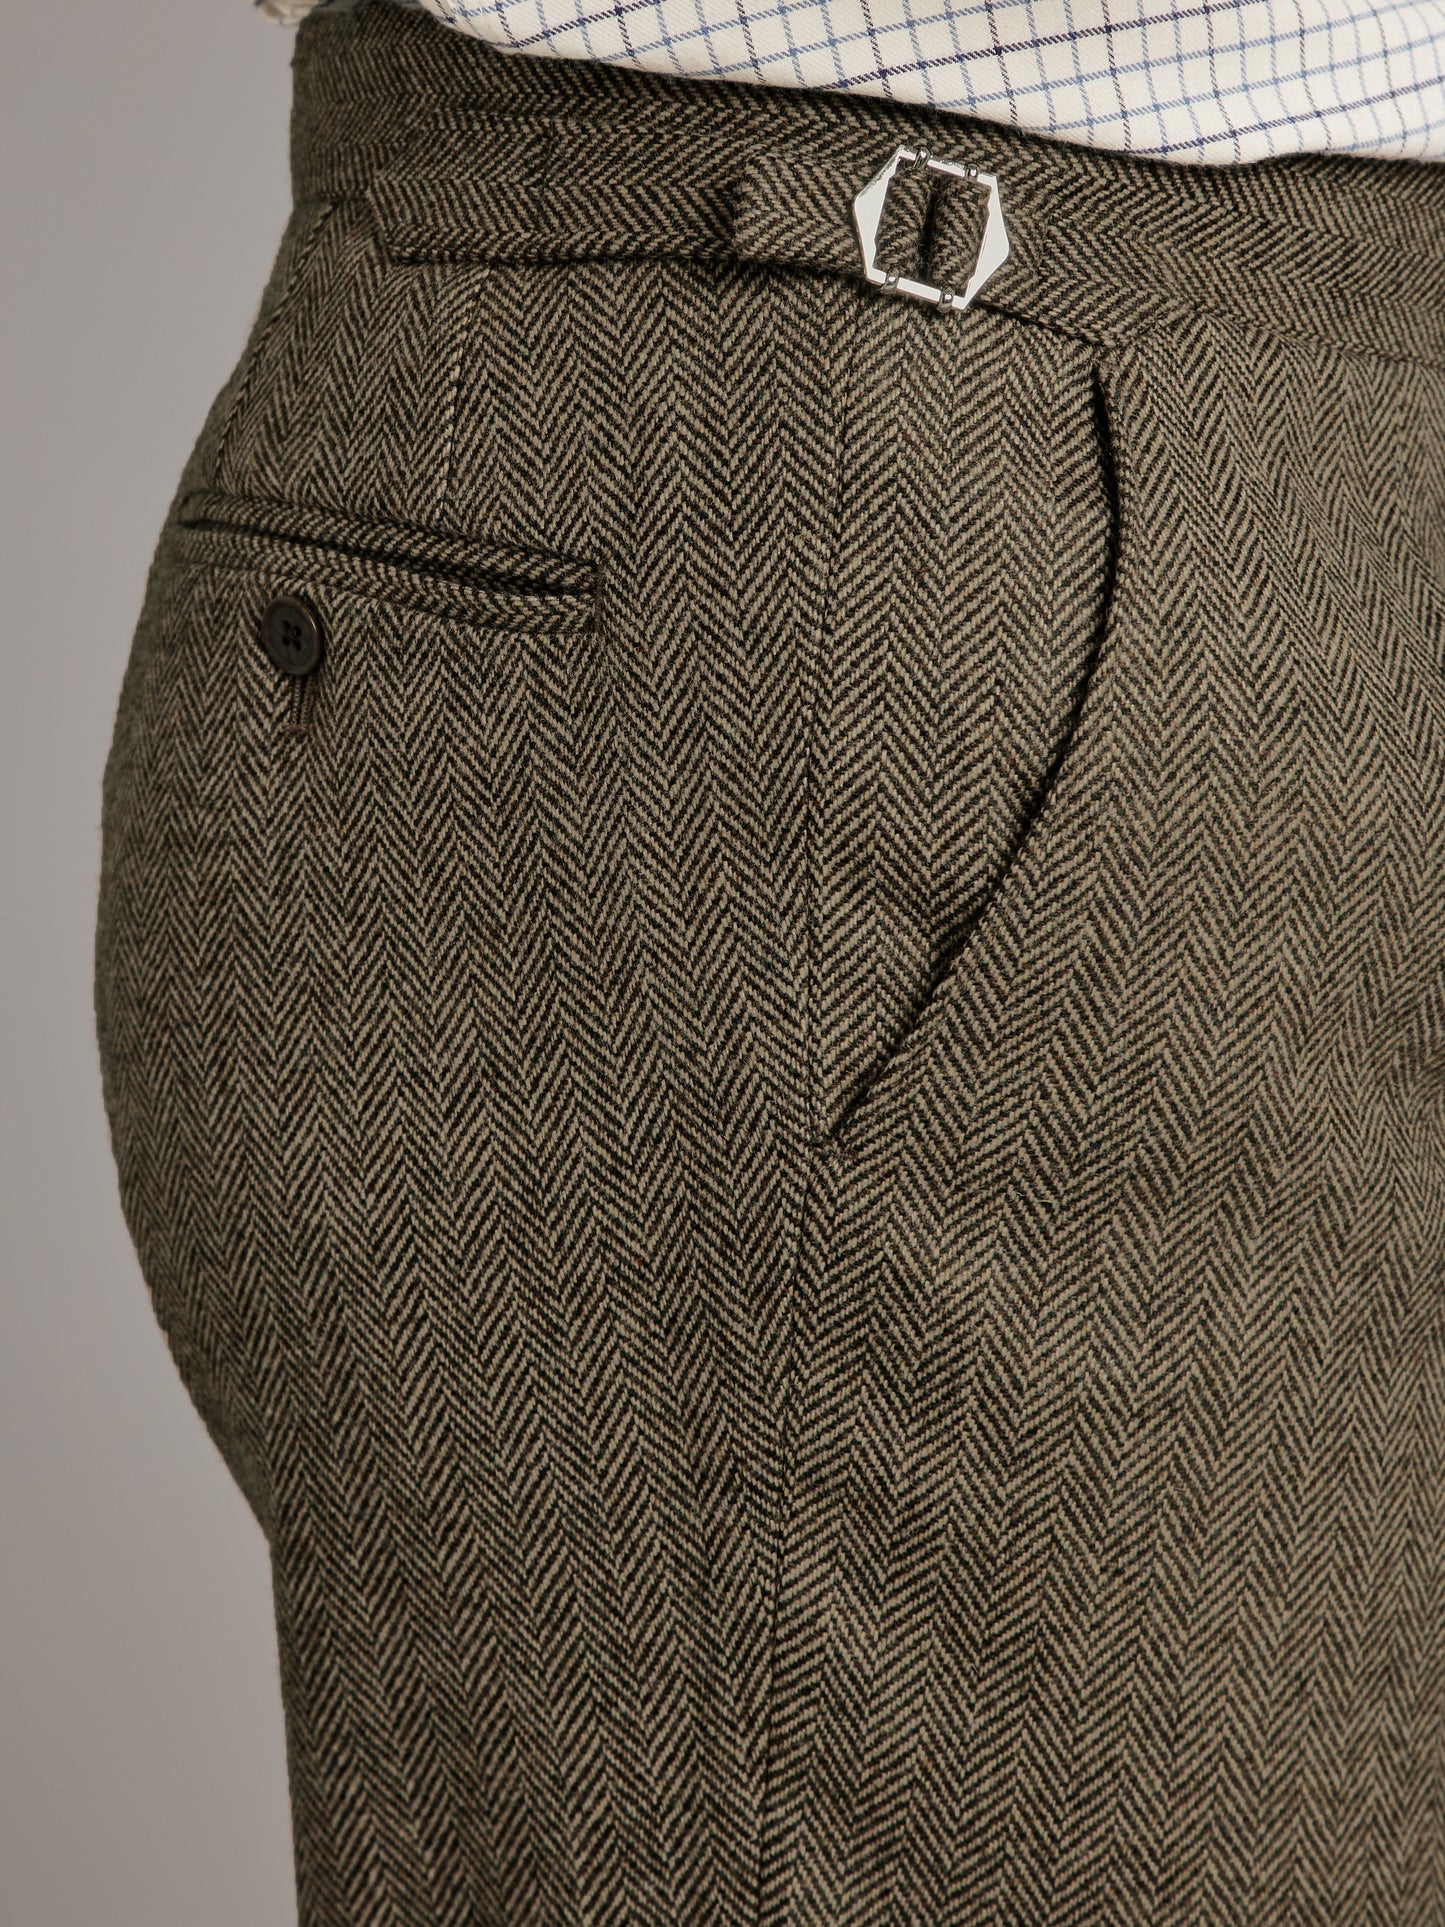 Pleated Trousers - Deveron Tweed